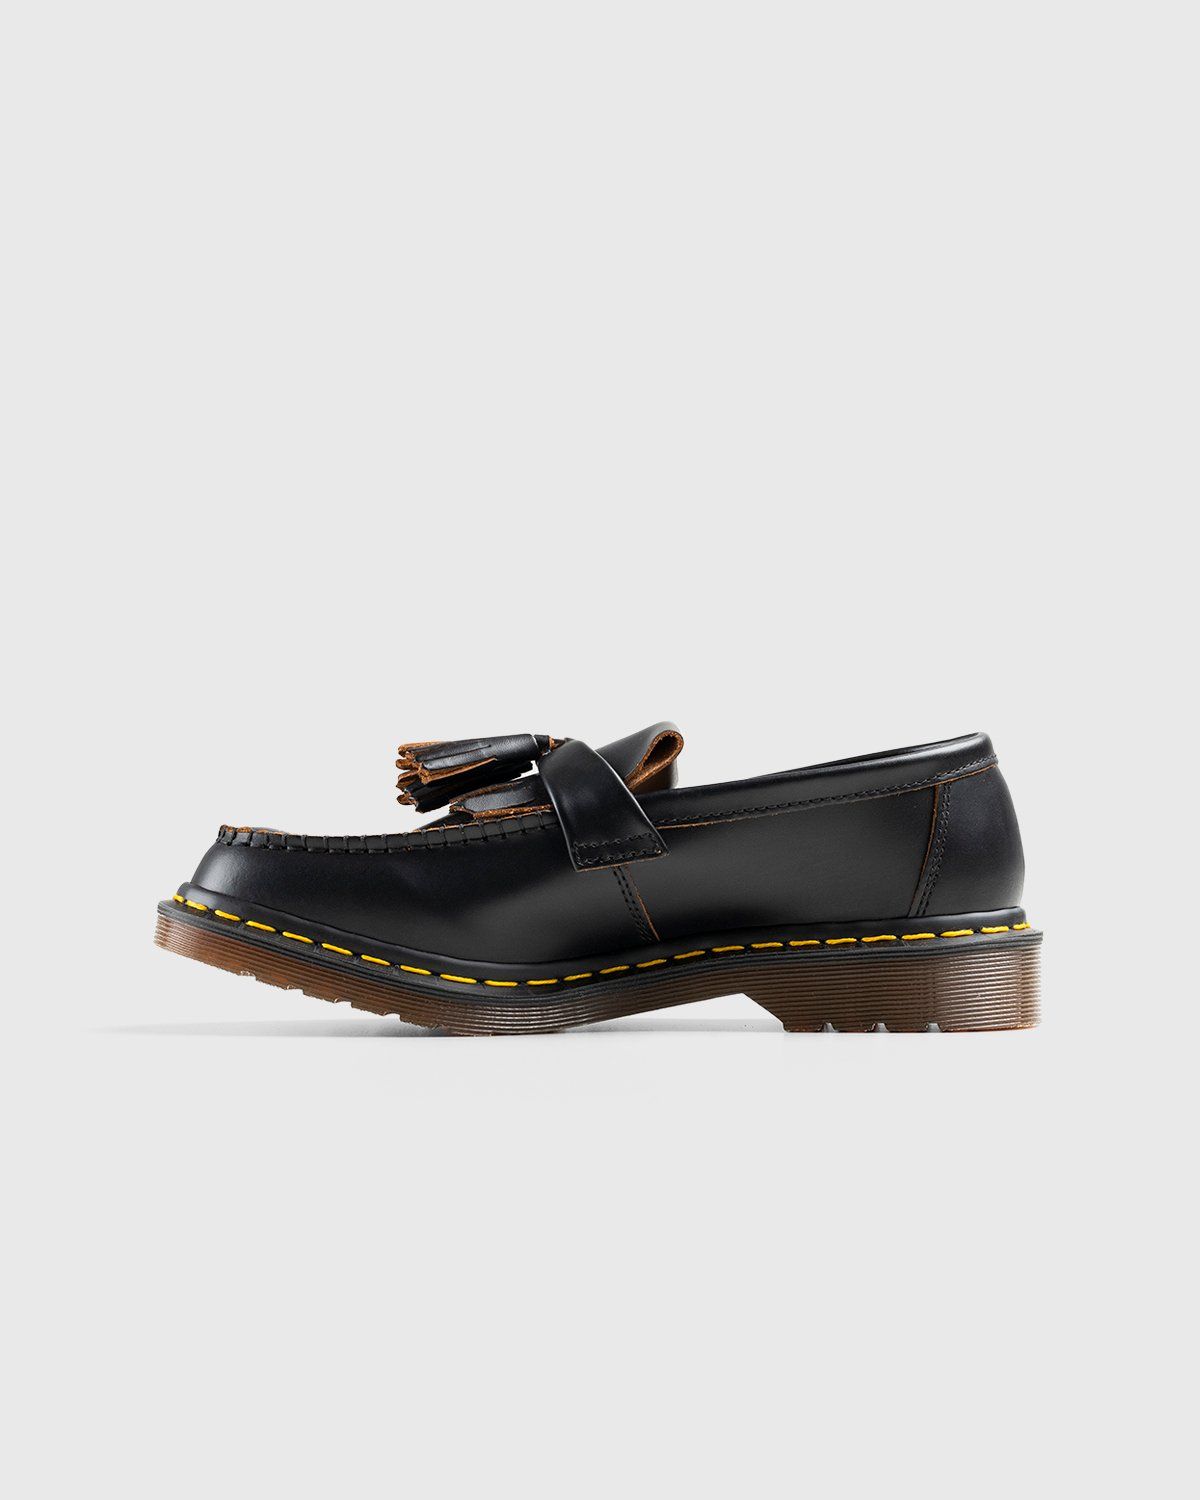 Dr. Martens – Adrian Black Quilon - Shoes - Black - Image 2